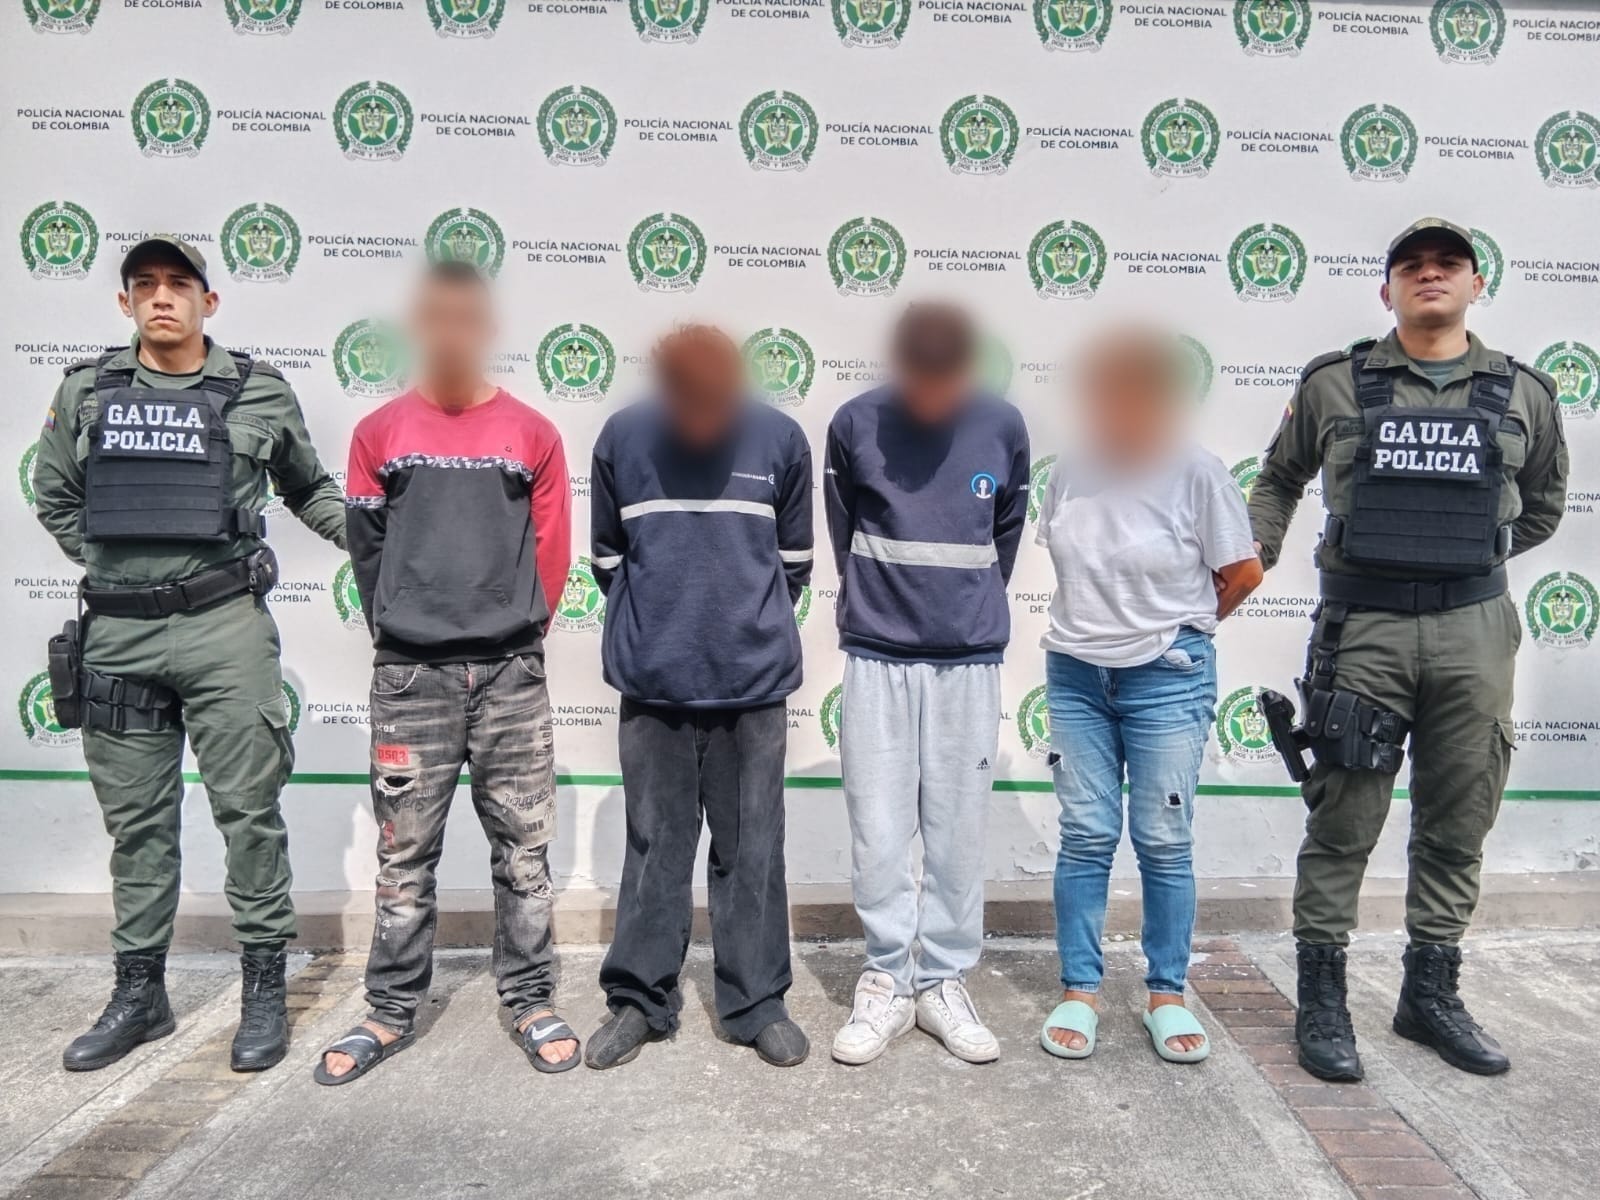 Operativo realizado por el Gaula de la policía Tolima en Bogotá, el rosal y mariquita, permitió la desarticulación de la estructura delincuencial conocida como ‘Los Rodilla’.